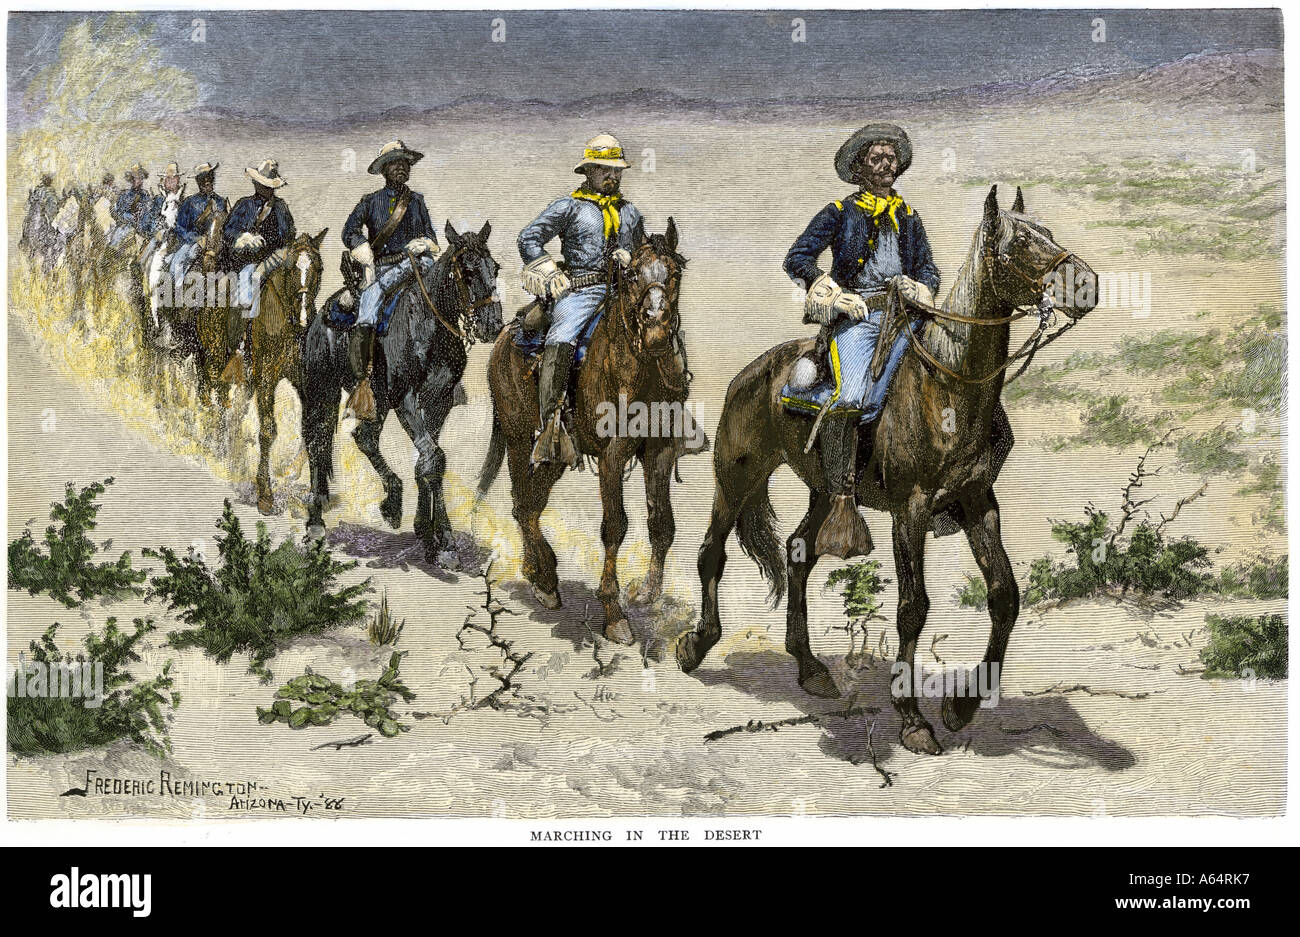 El búfalo africano-americanos soldados marchando en el desierto de Arizona Apache durante las guerras de la década de 1880. Xilografía coloreada a mano de un Frederic Remington ilustración Foto de stock